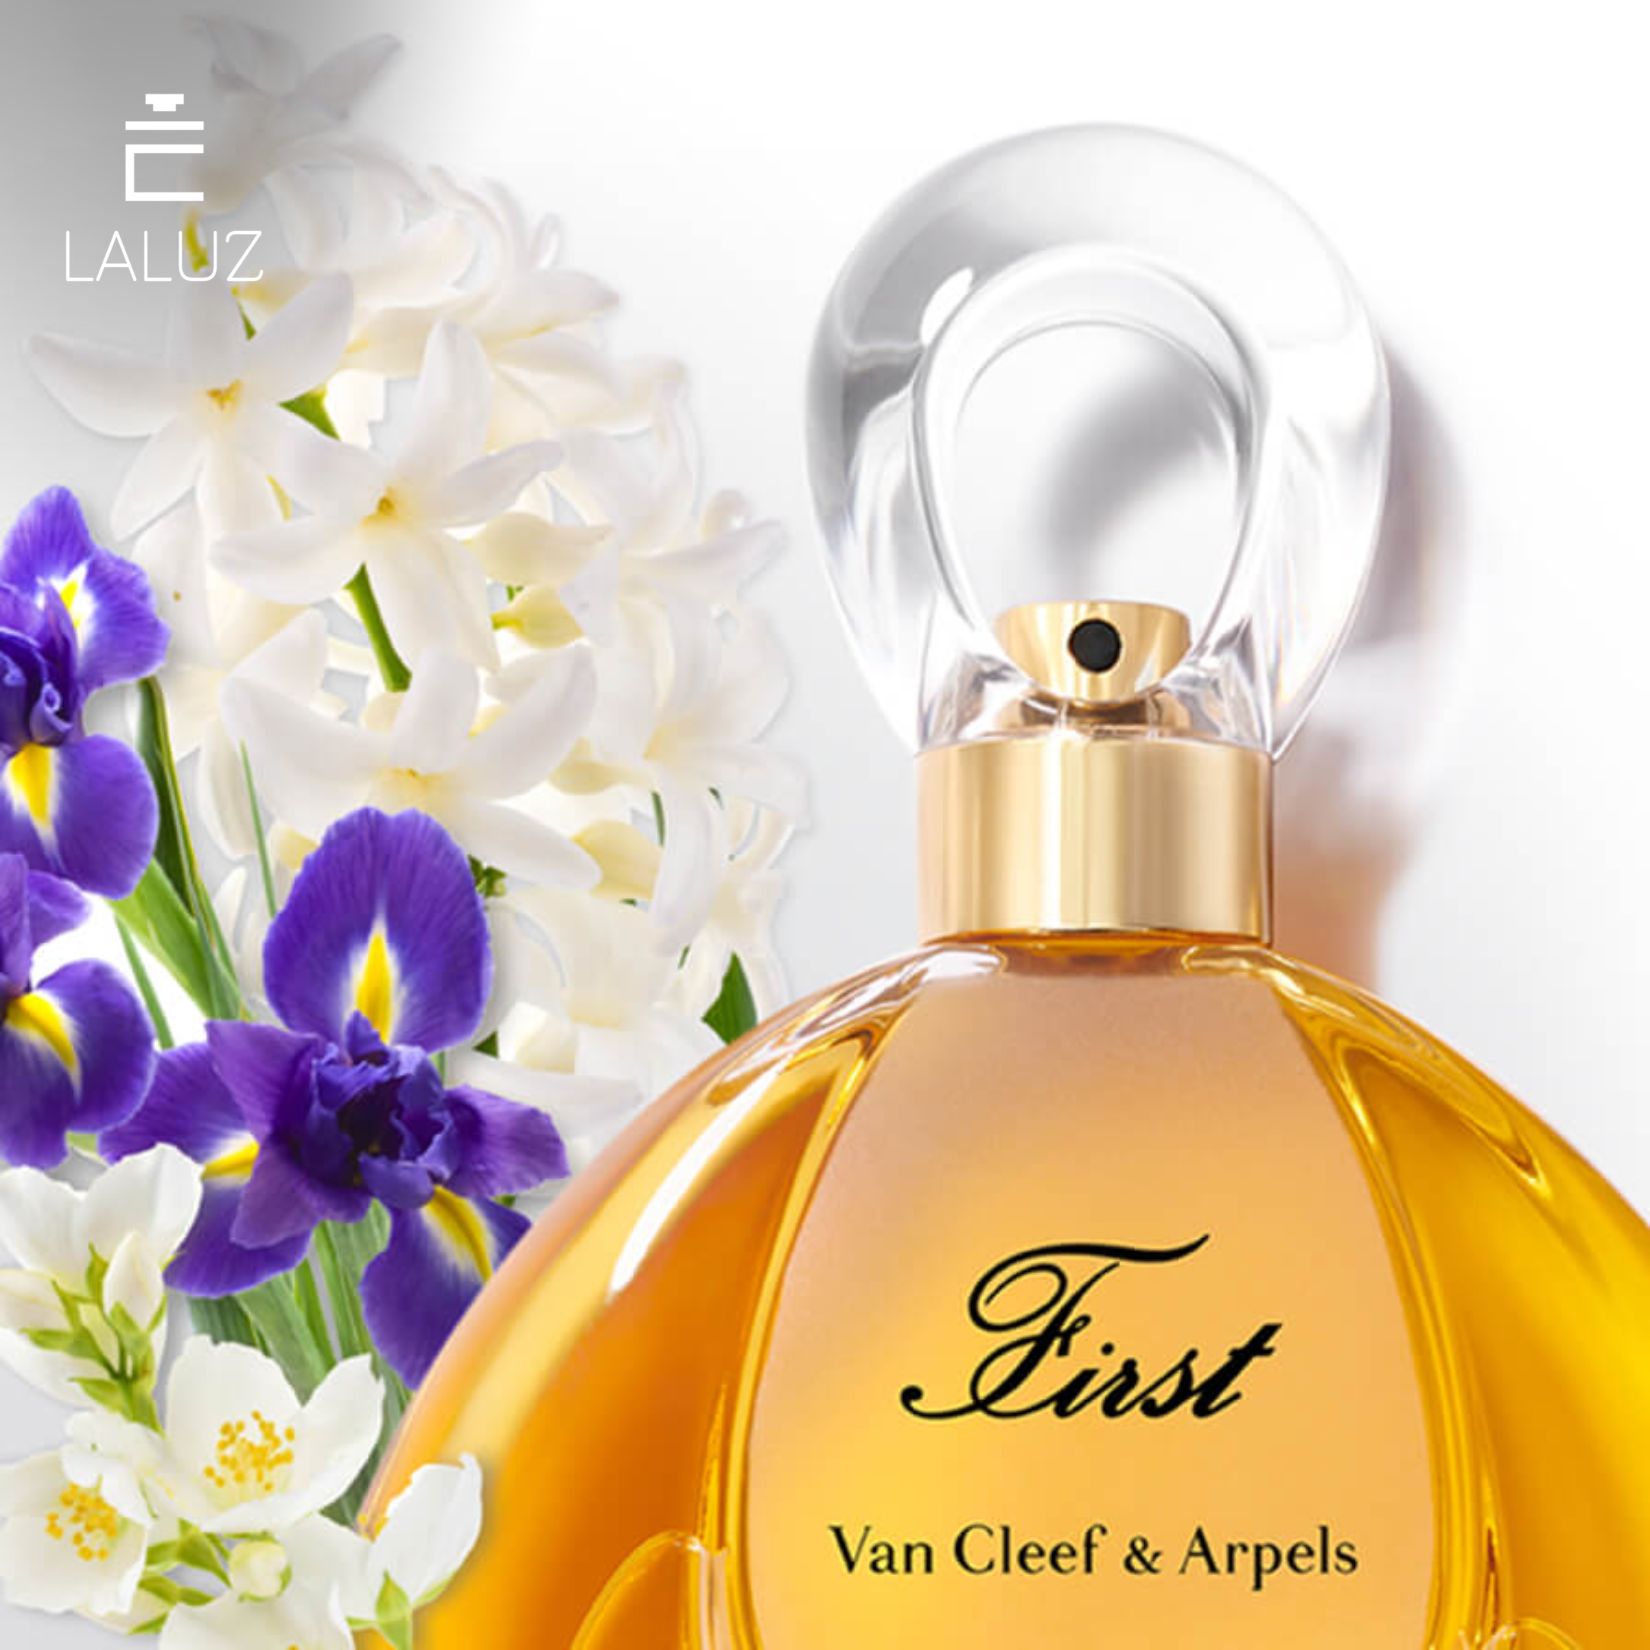 Nước hoa Van Cleef & Arpels Nữ First chính hãng